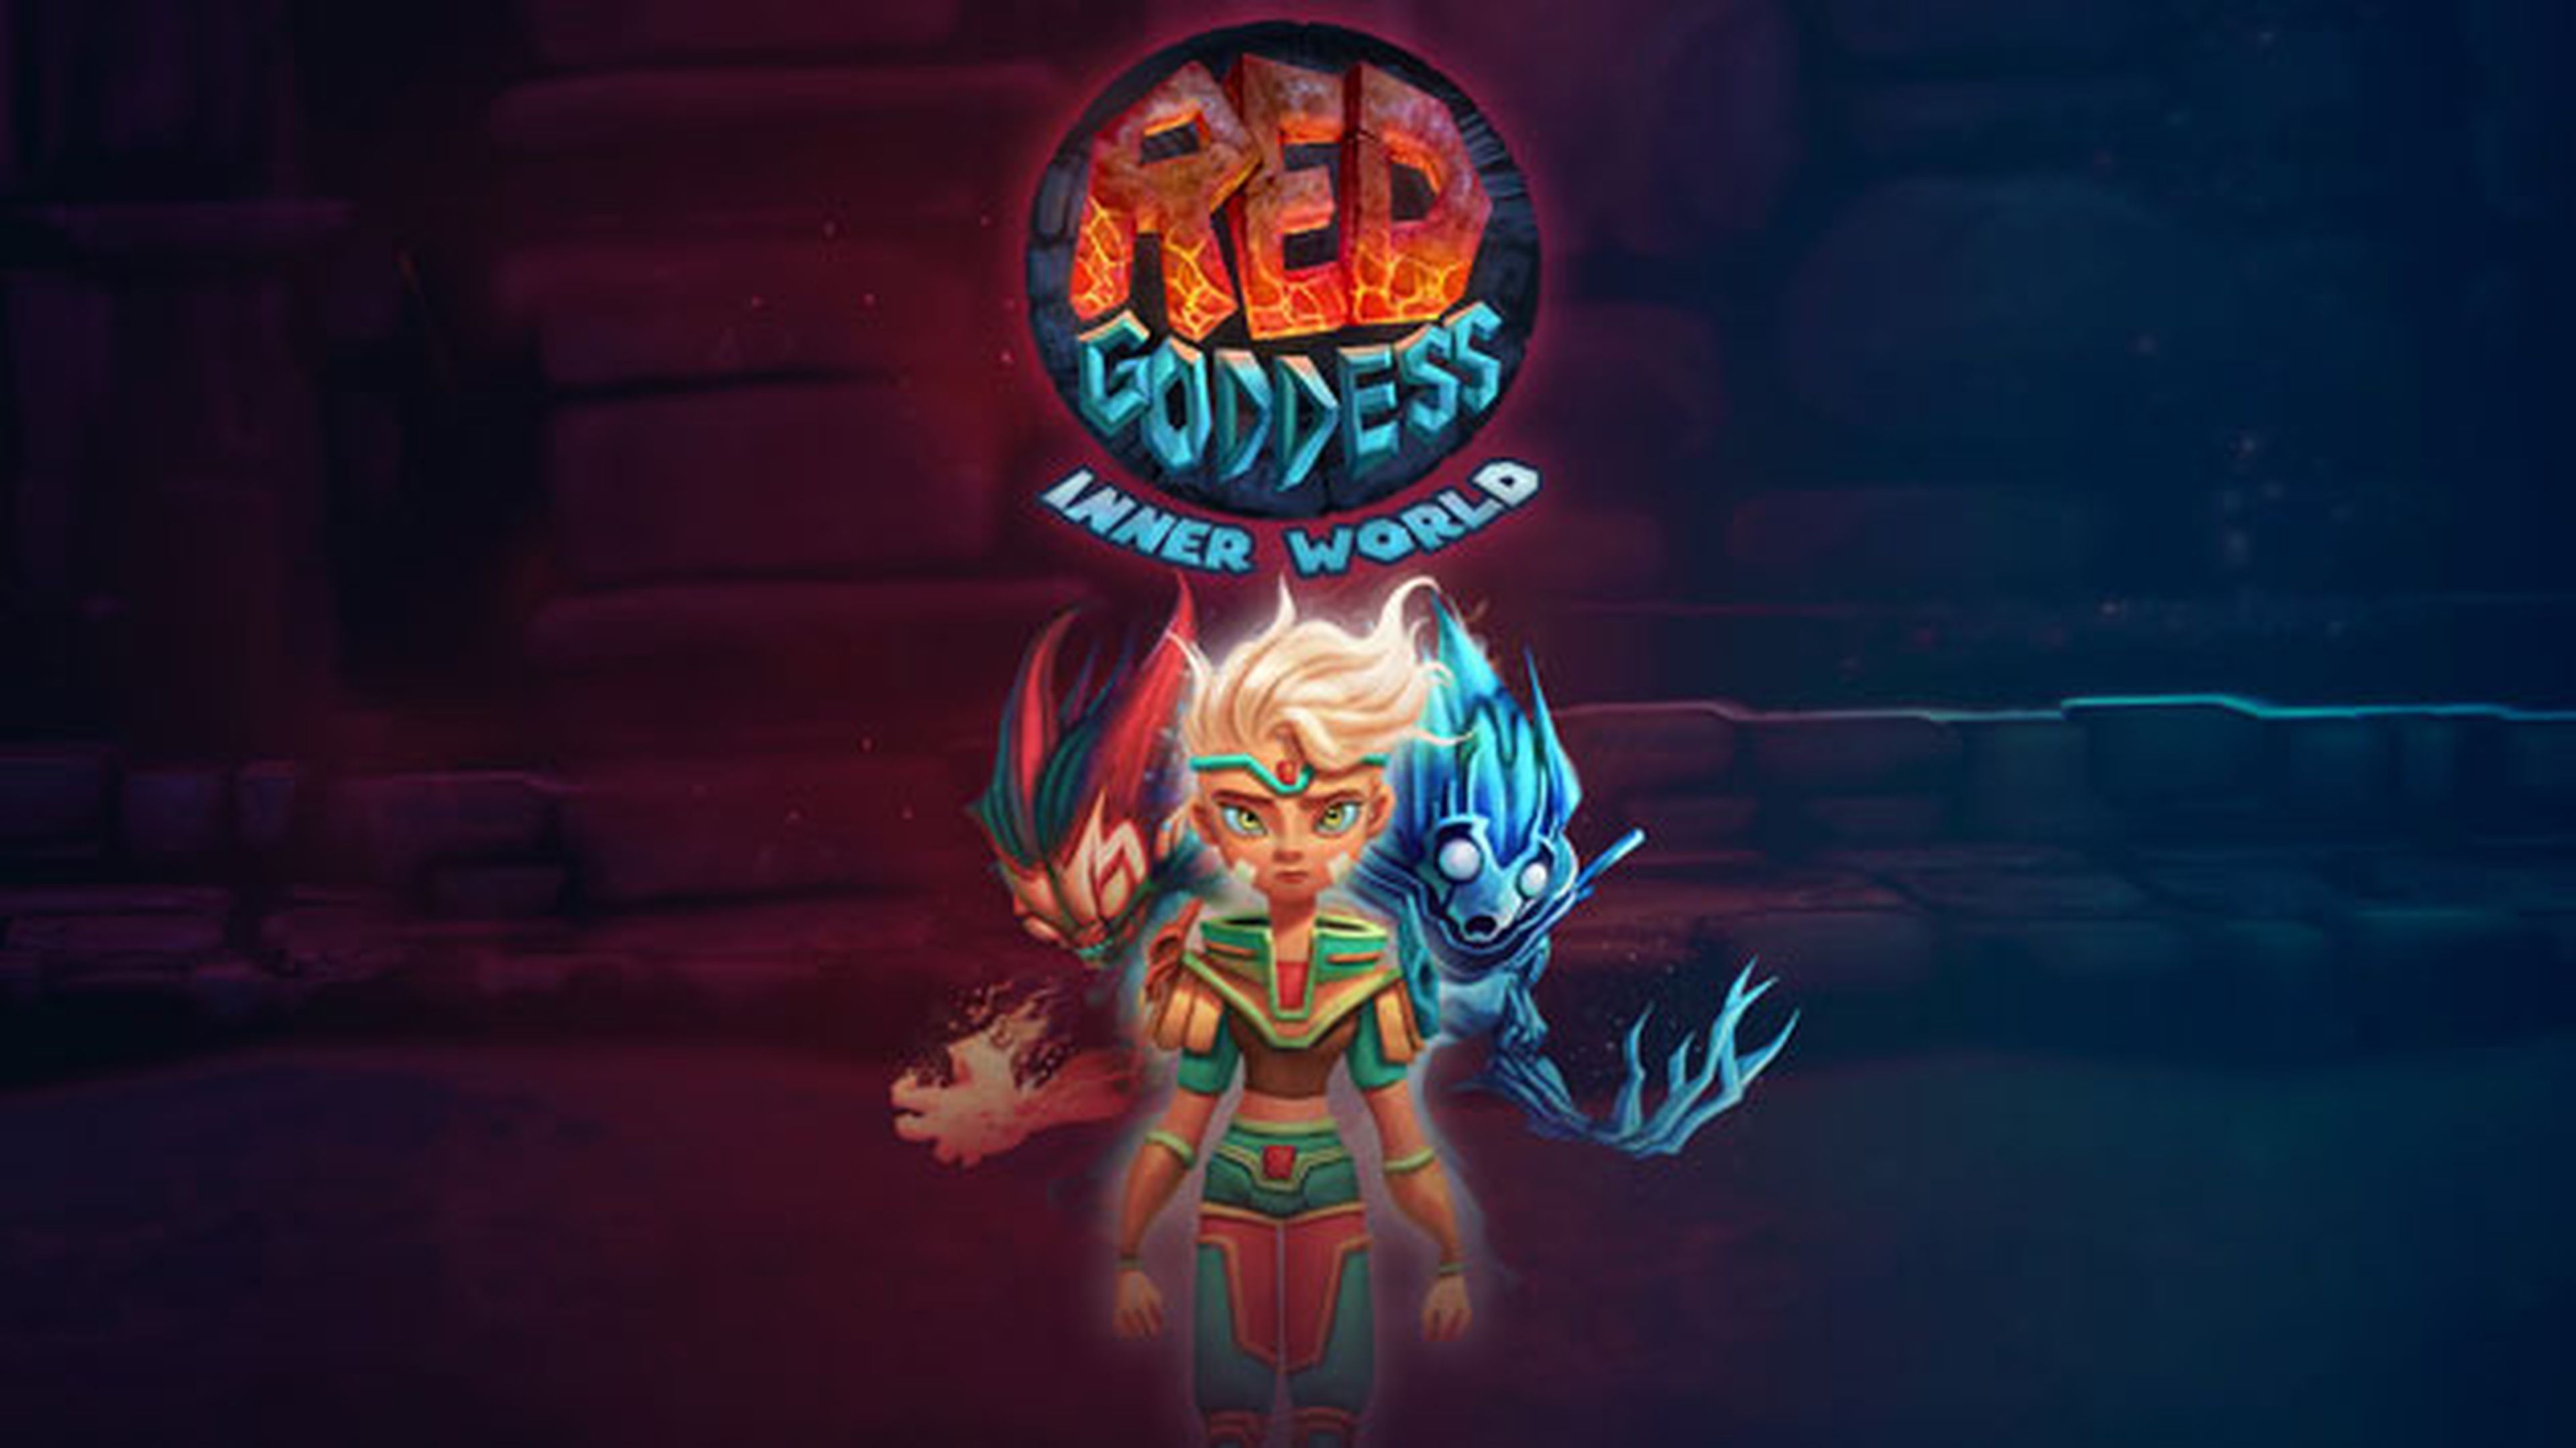 Red Goddess: Inner World, aventuras a la española en PS4